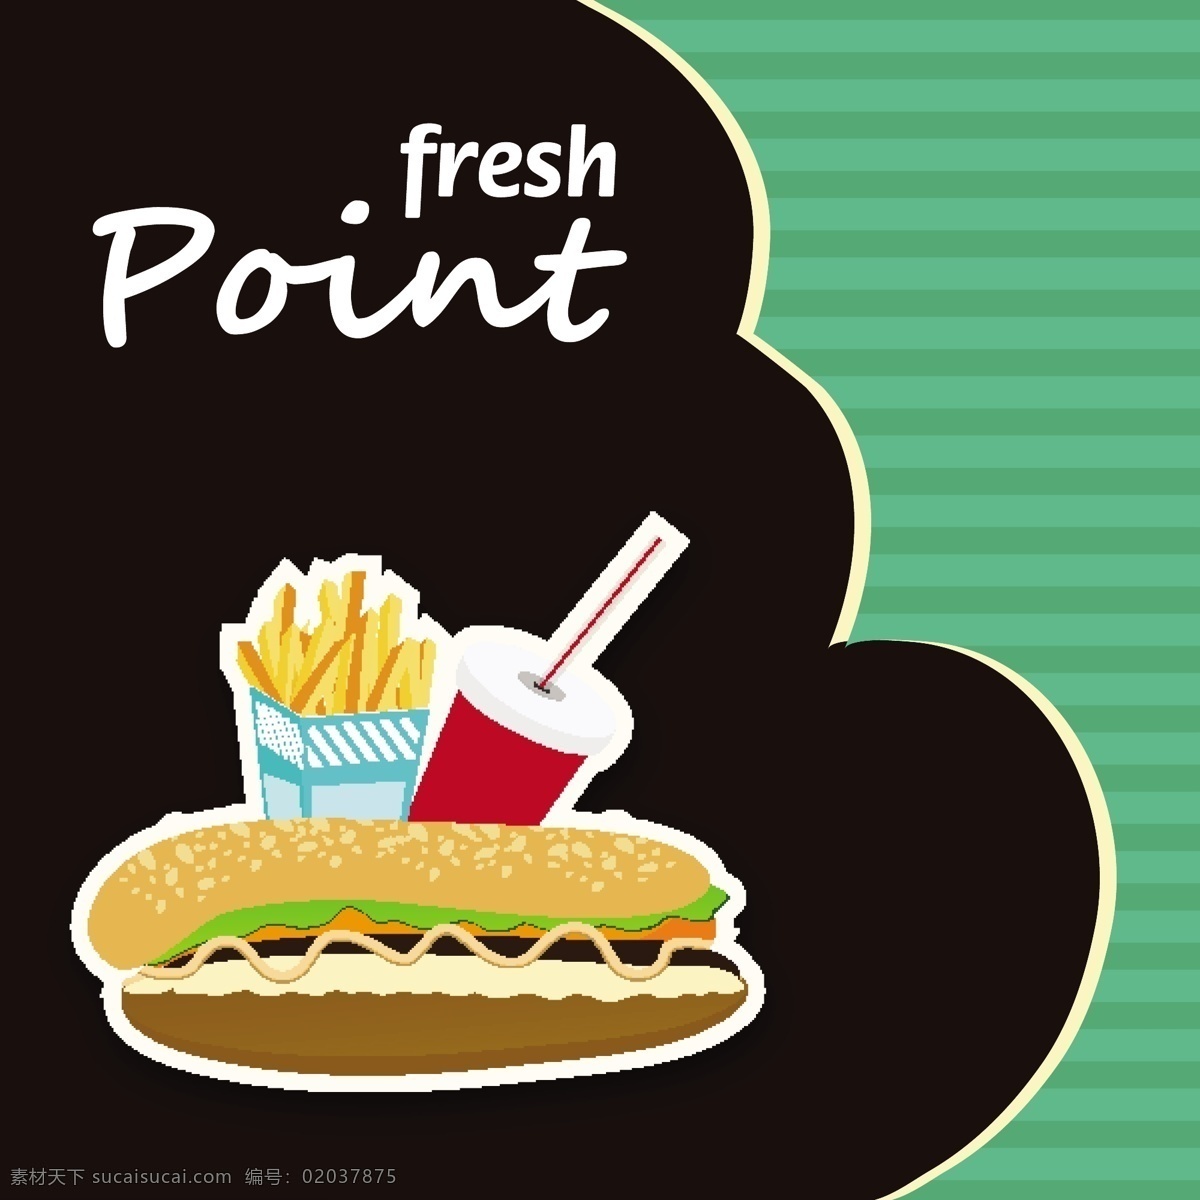 餐饮 图标 标签 矢量 模板下载 饮料 杯子 汉堡 美食 食物 餐饮海报 宣传海报 标志图标 矢量素材 黑色